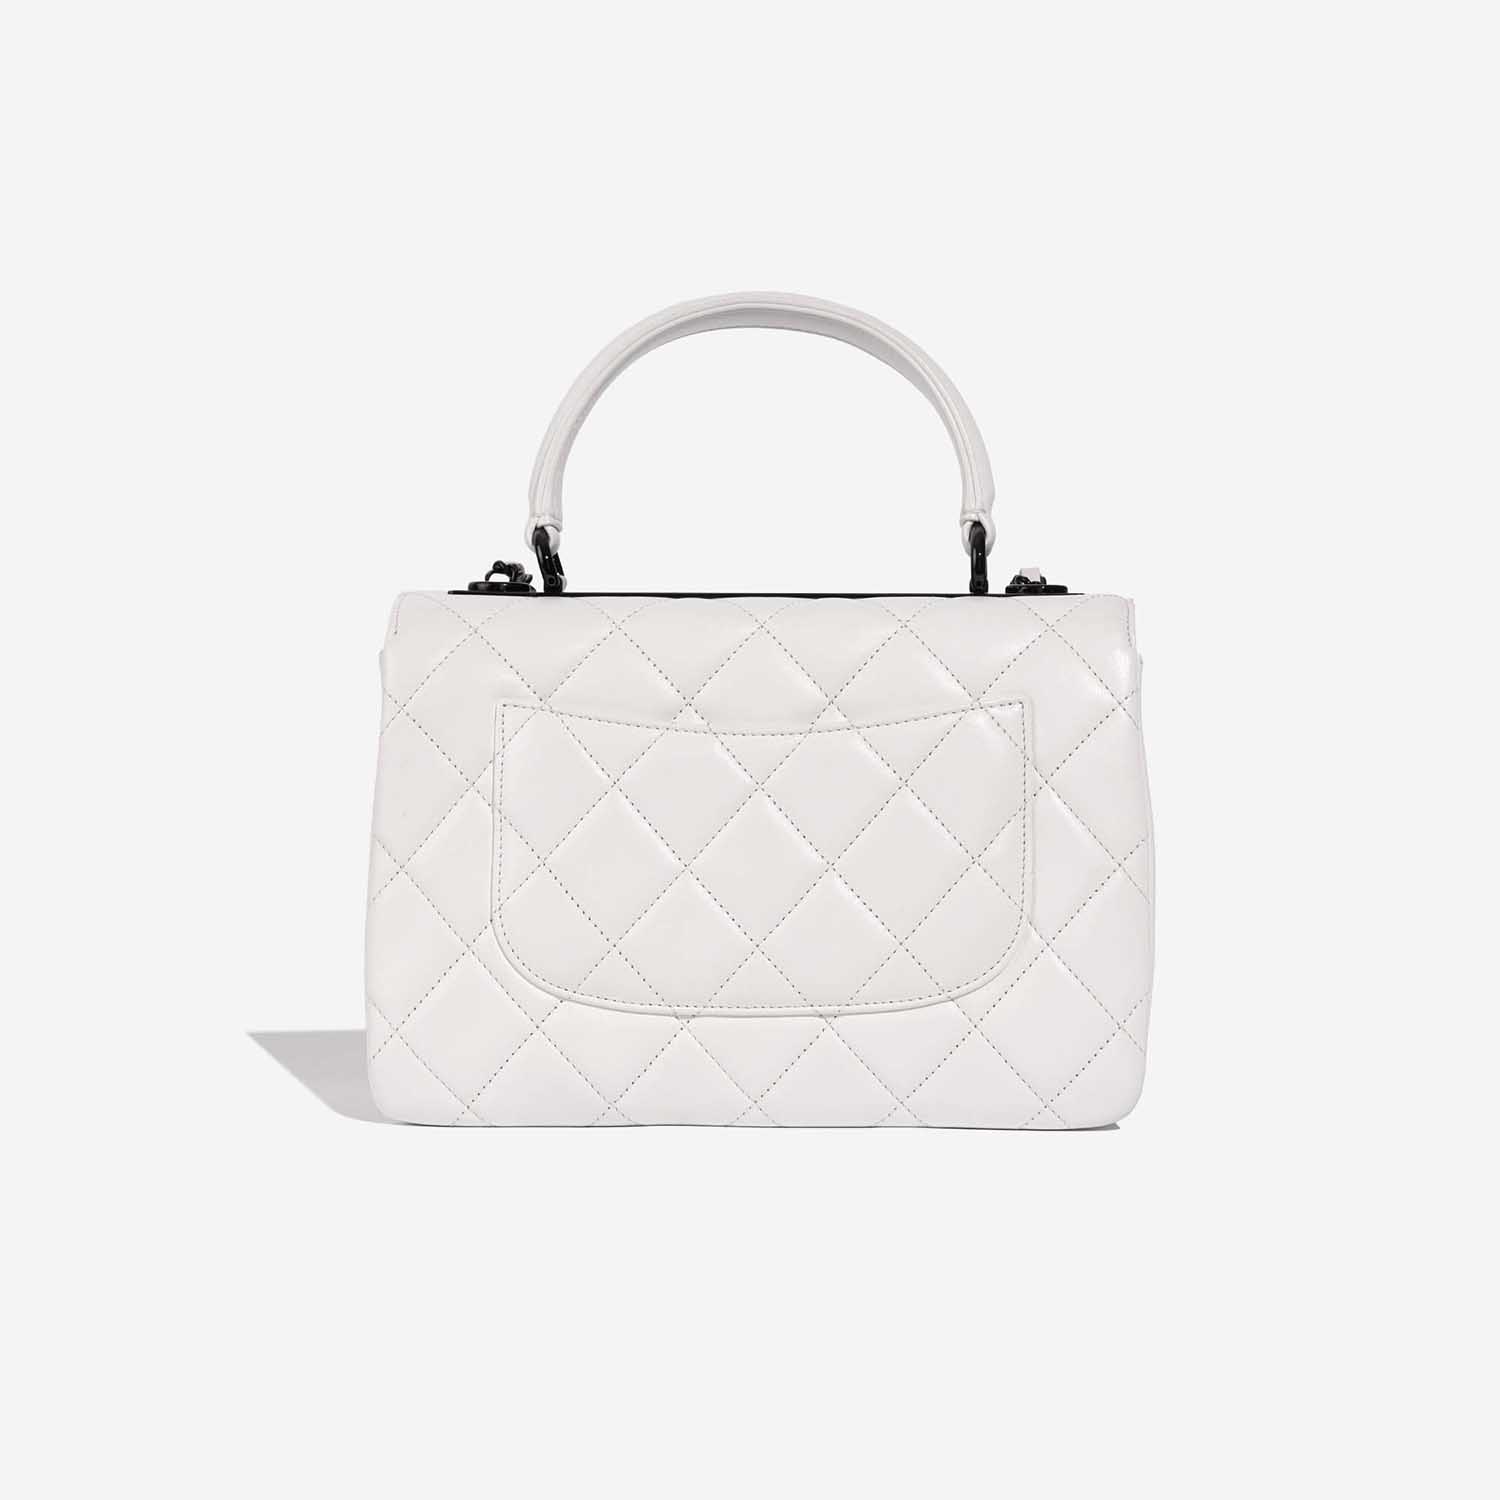 Chanel TimelessHandle Small White Back | Verkaufen Sie Ihre Designer-Tasche auf Saclab.com